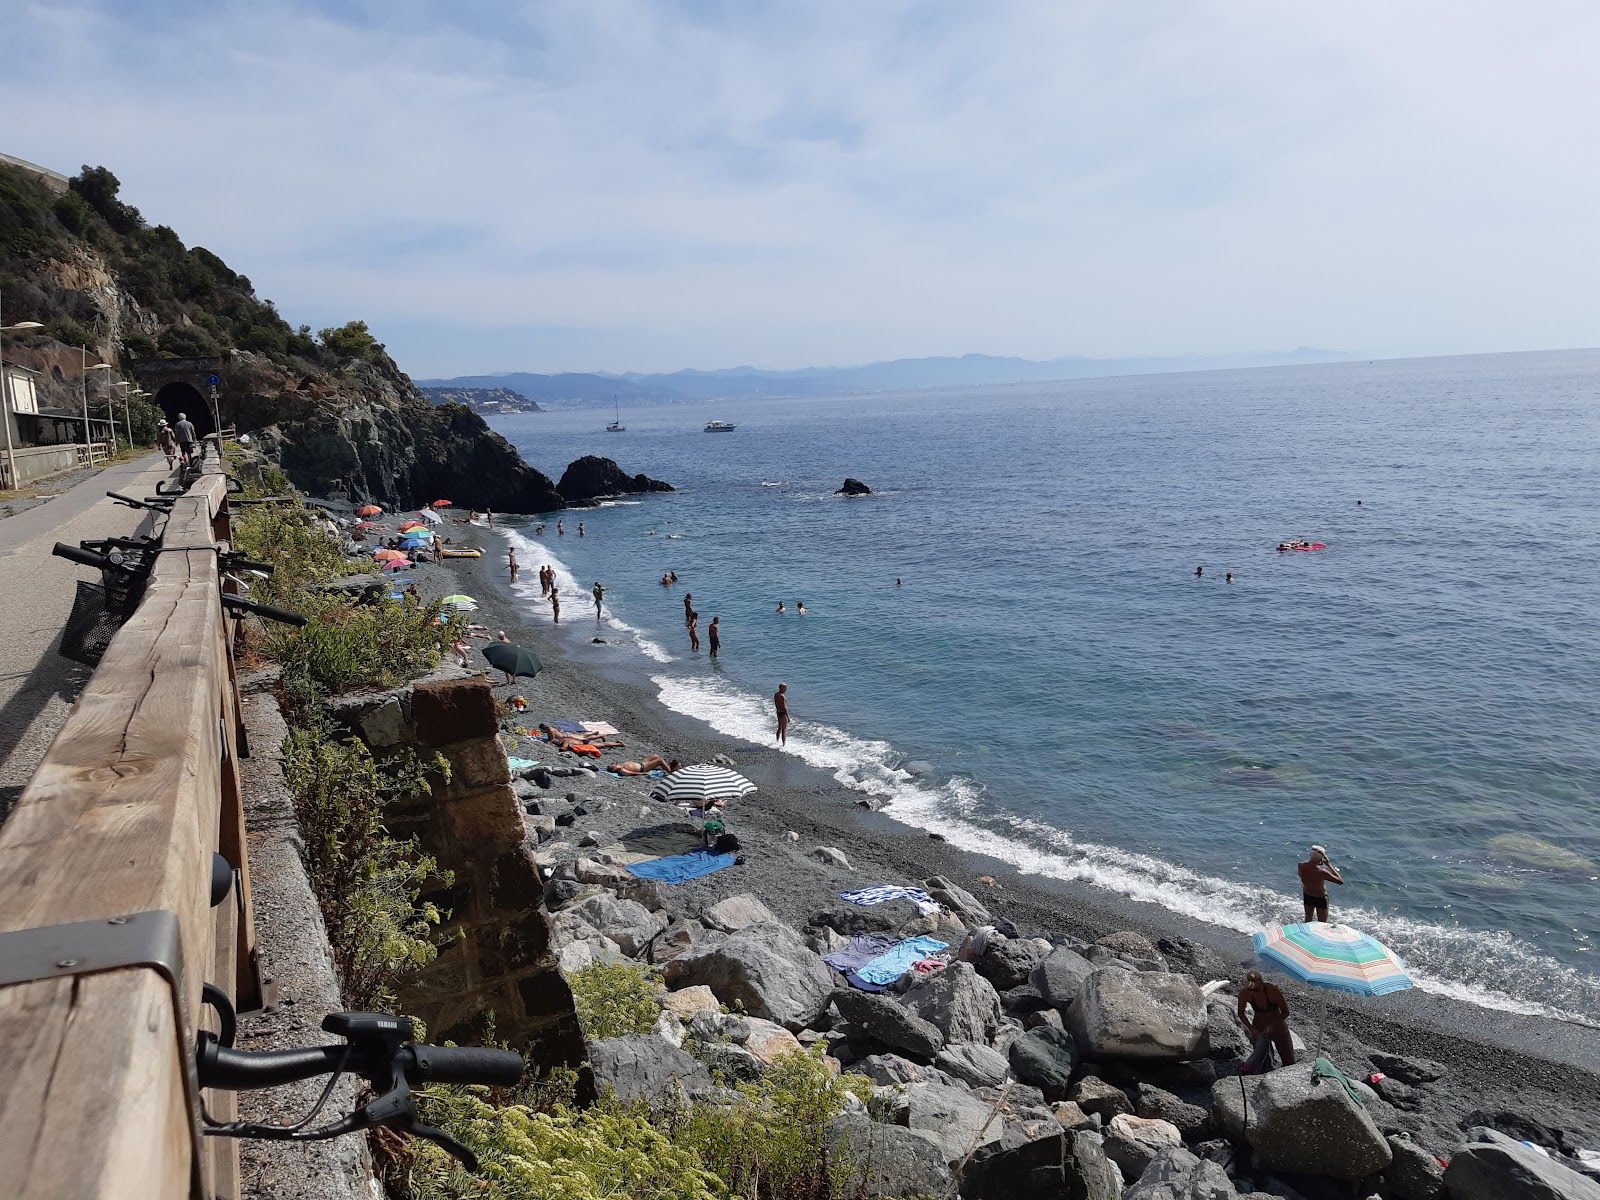 Spiaggia Arenon'in fotoğrafı doğrudan plaj ile birlikte